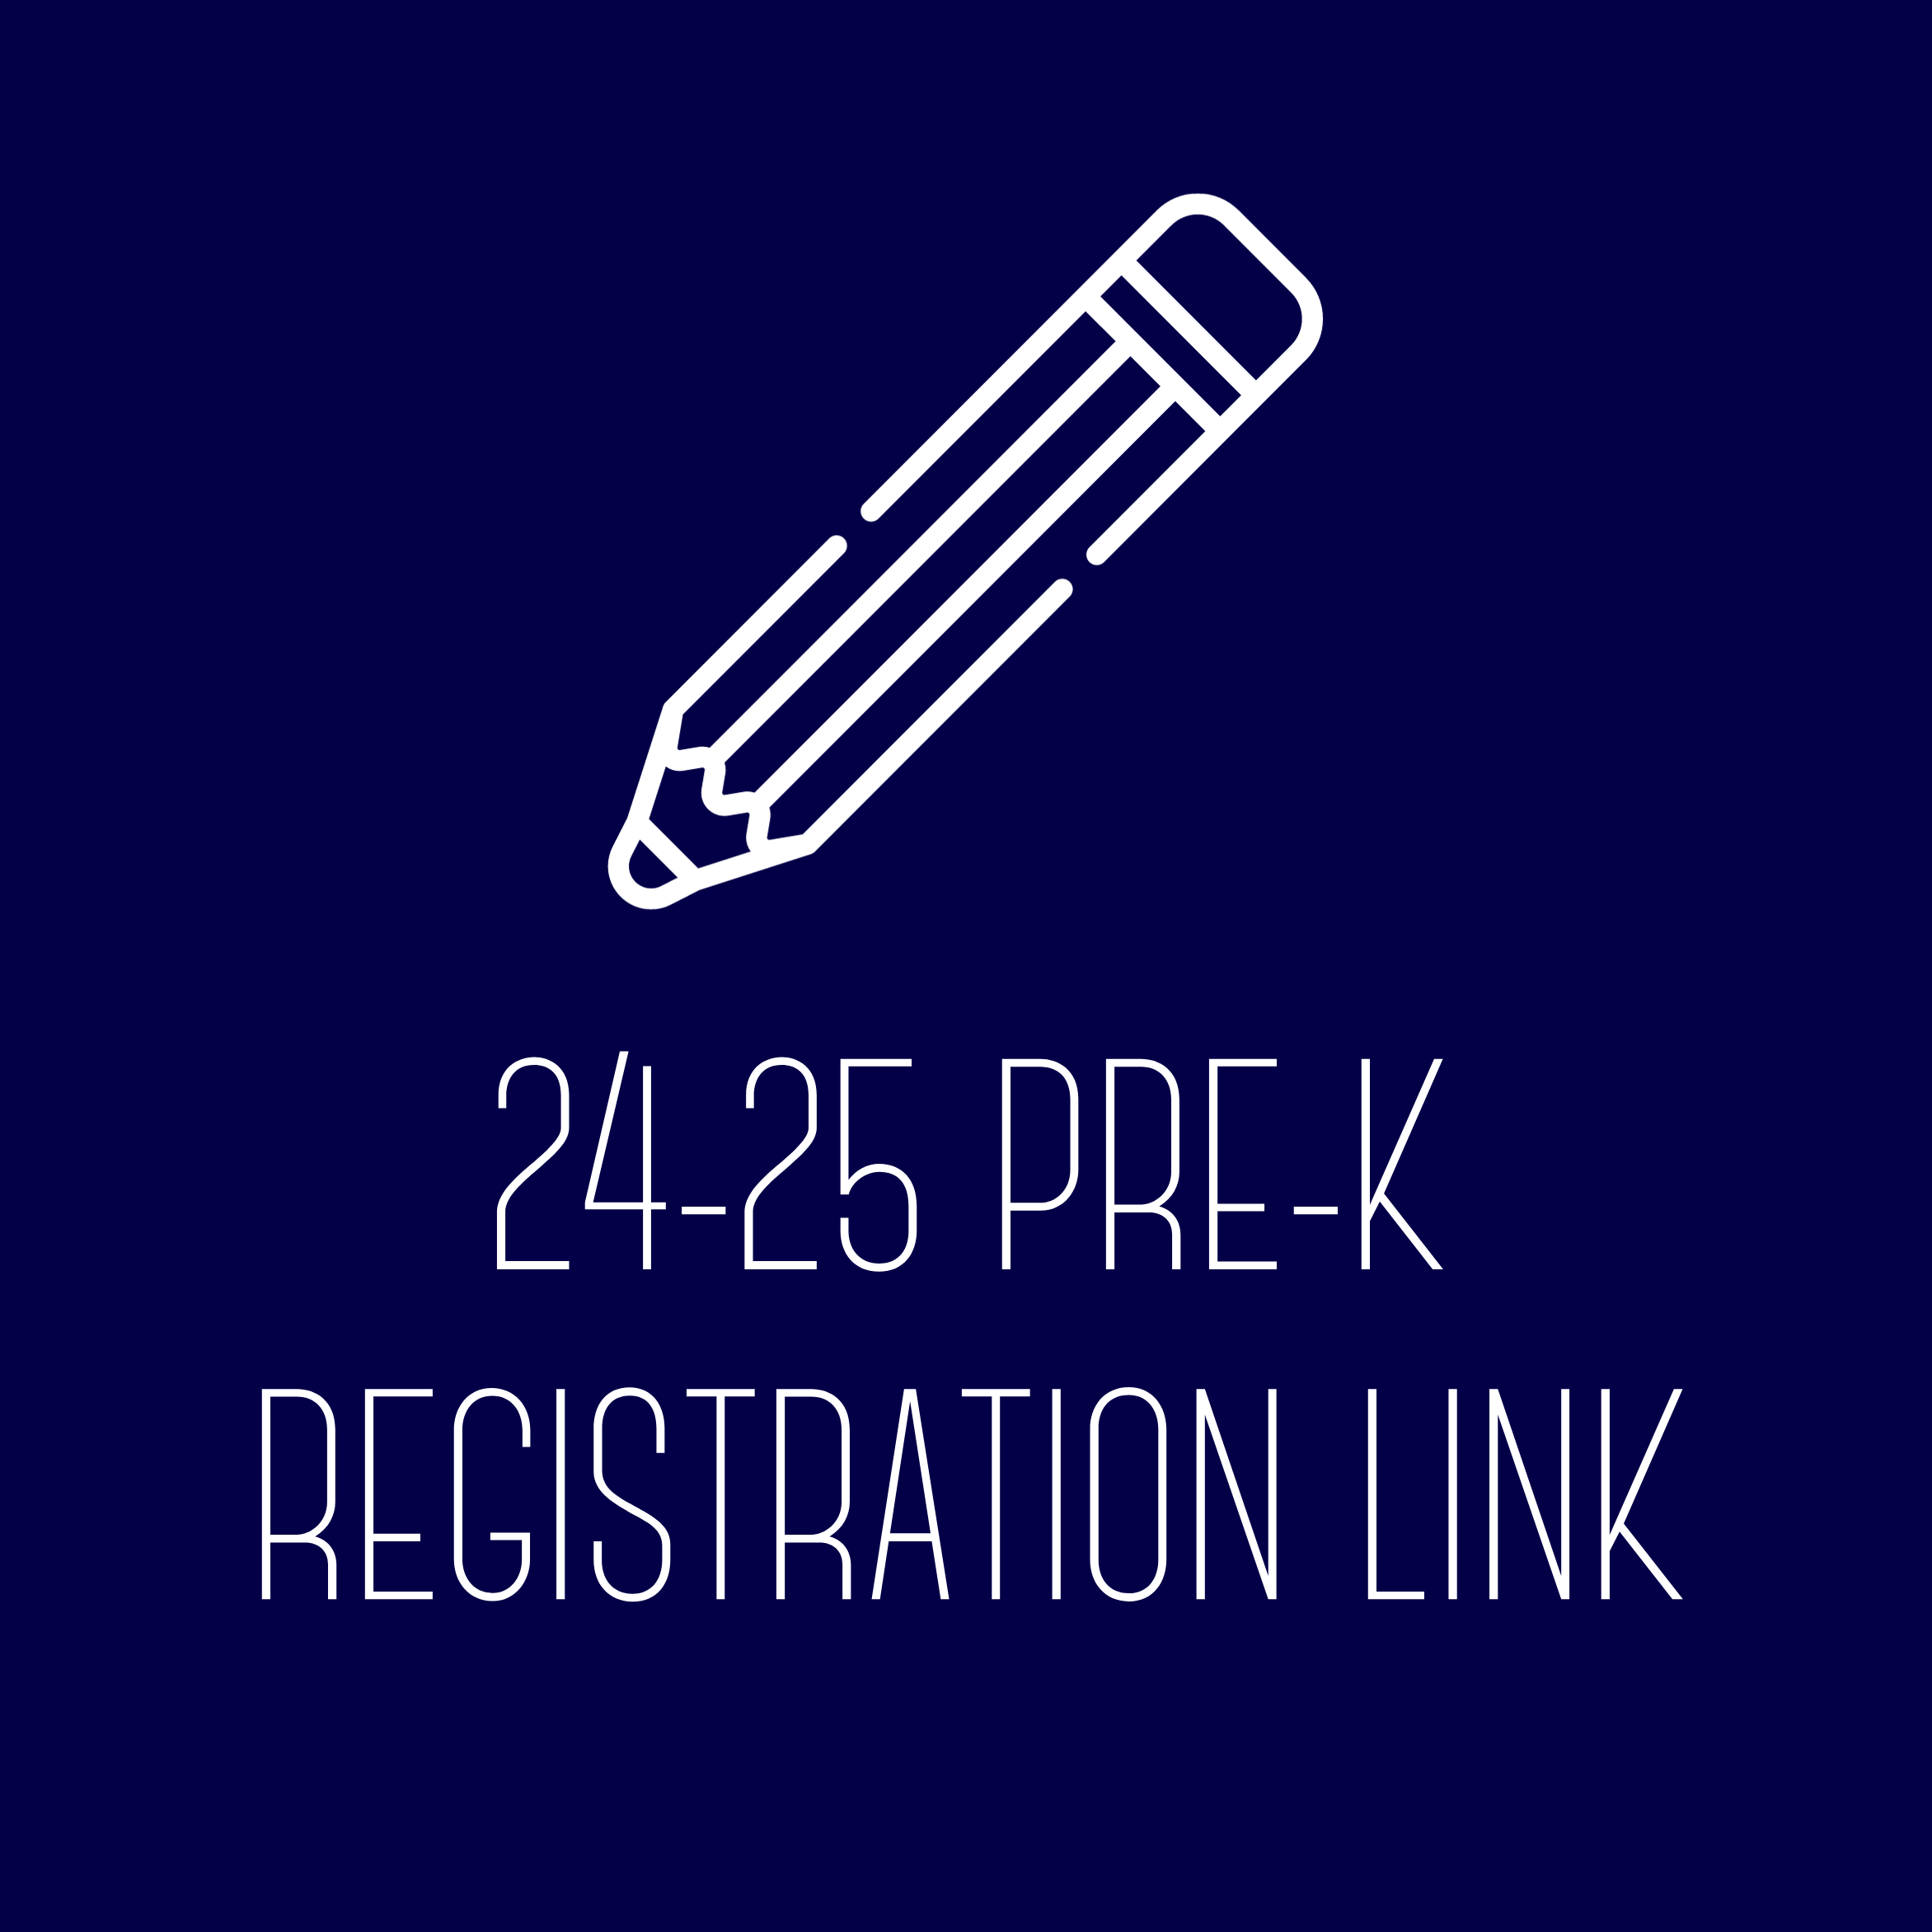 Pre-K Registration Link